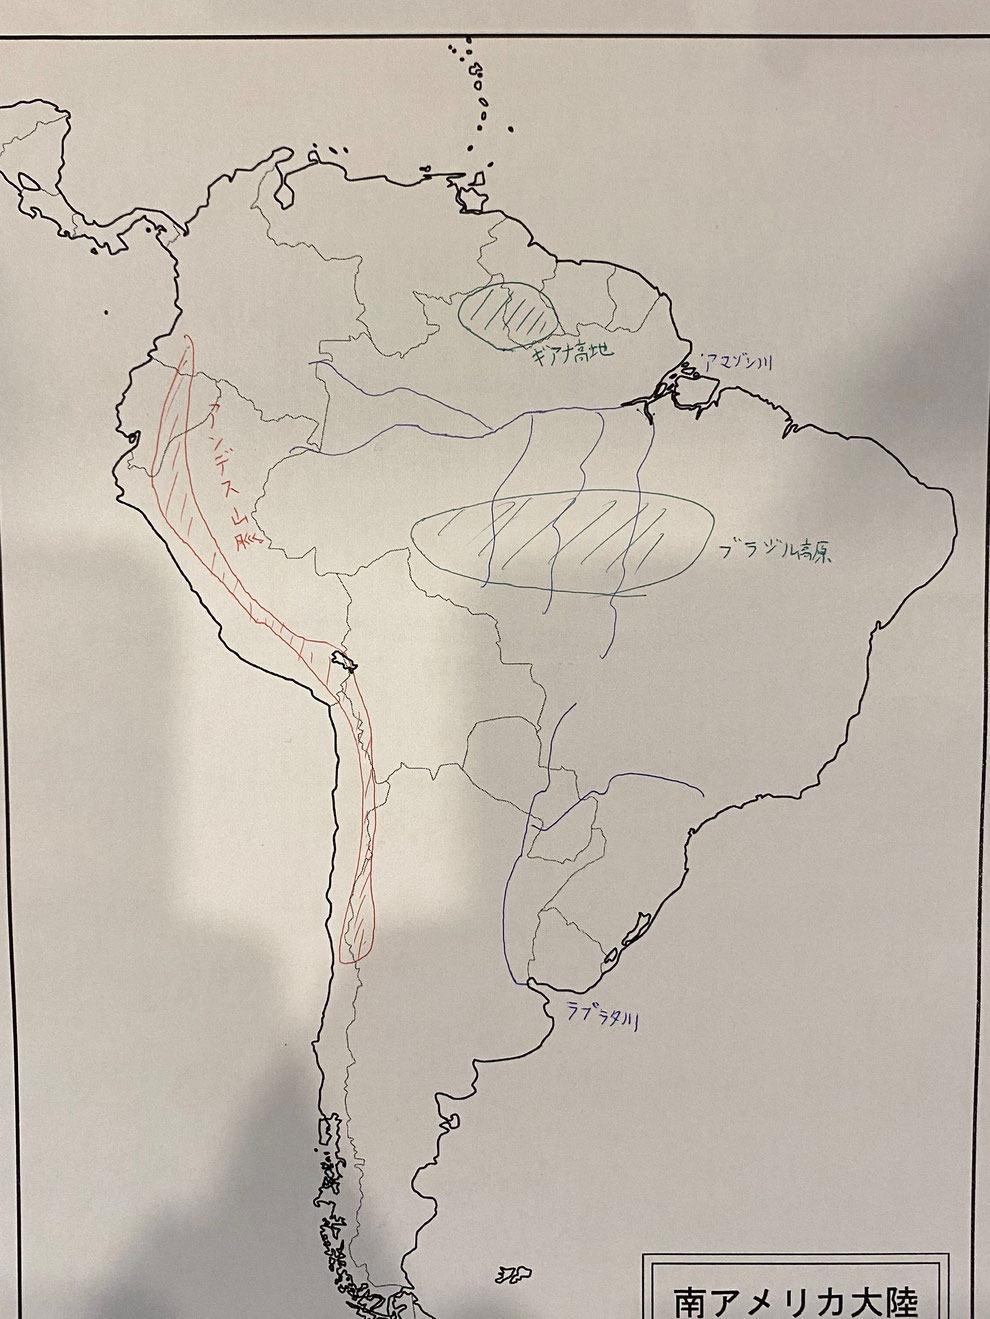 地理 世界各地の地理 南アメリカ州編 家庭教師のやる気アシスト